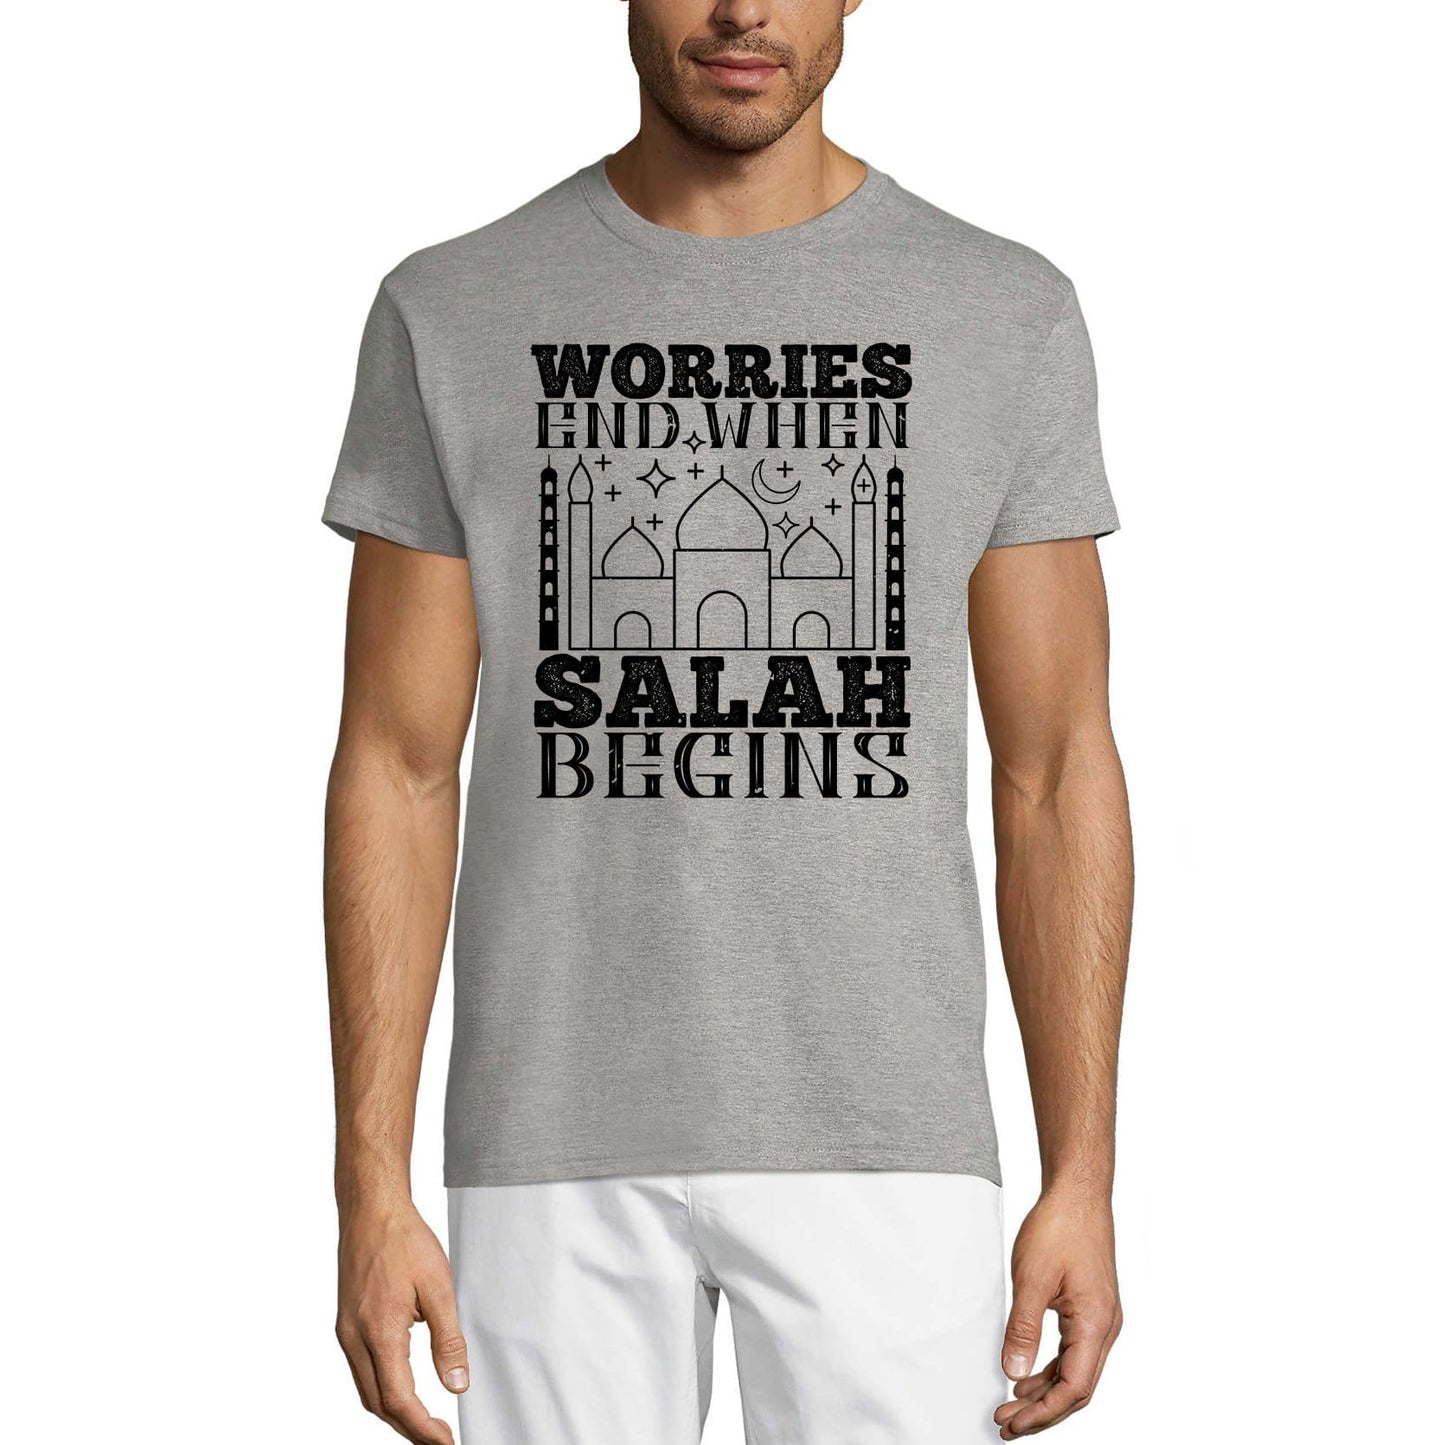 ULTRABASIC Herren-T-Shirt. Sorgen enden, wenn Salah beginnt – religiöses Zitat